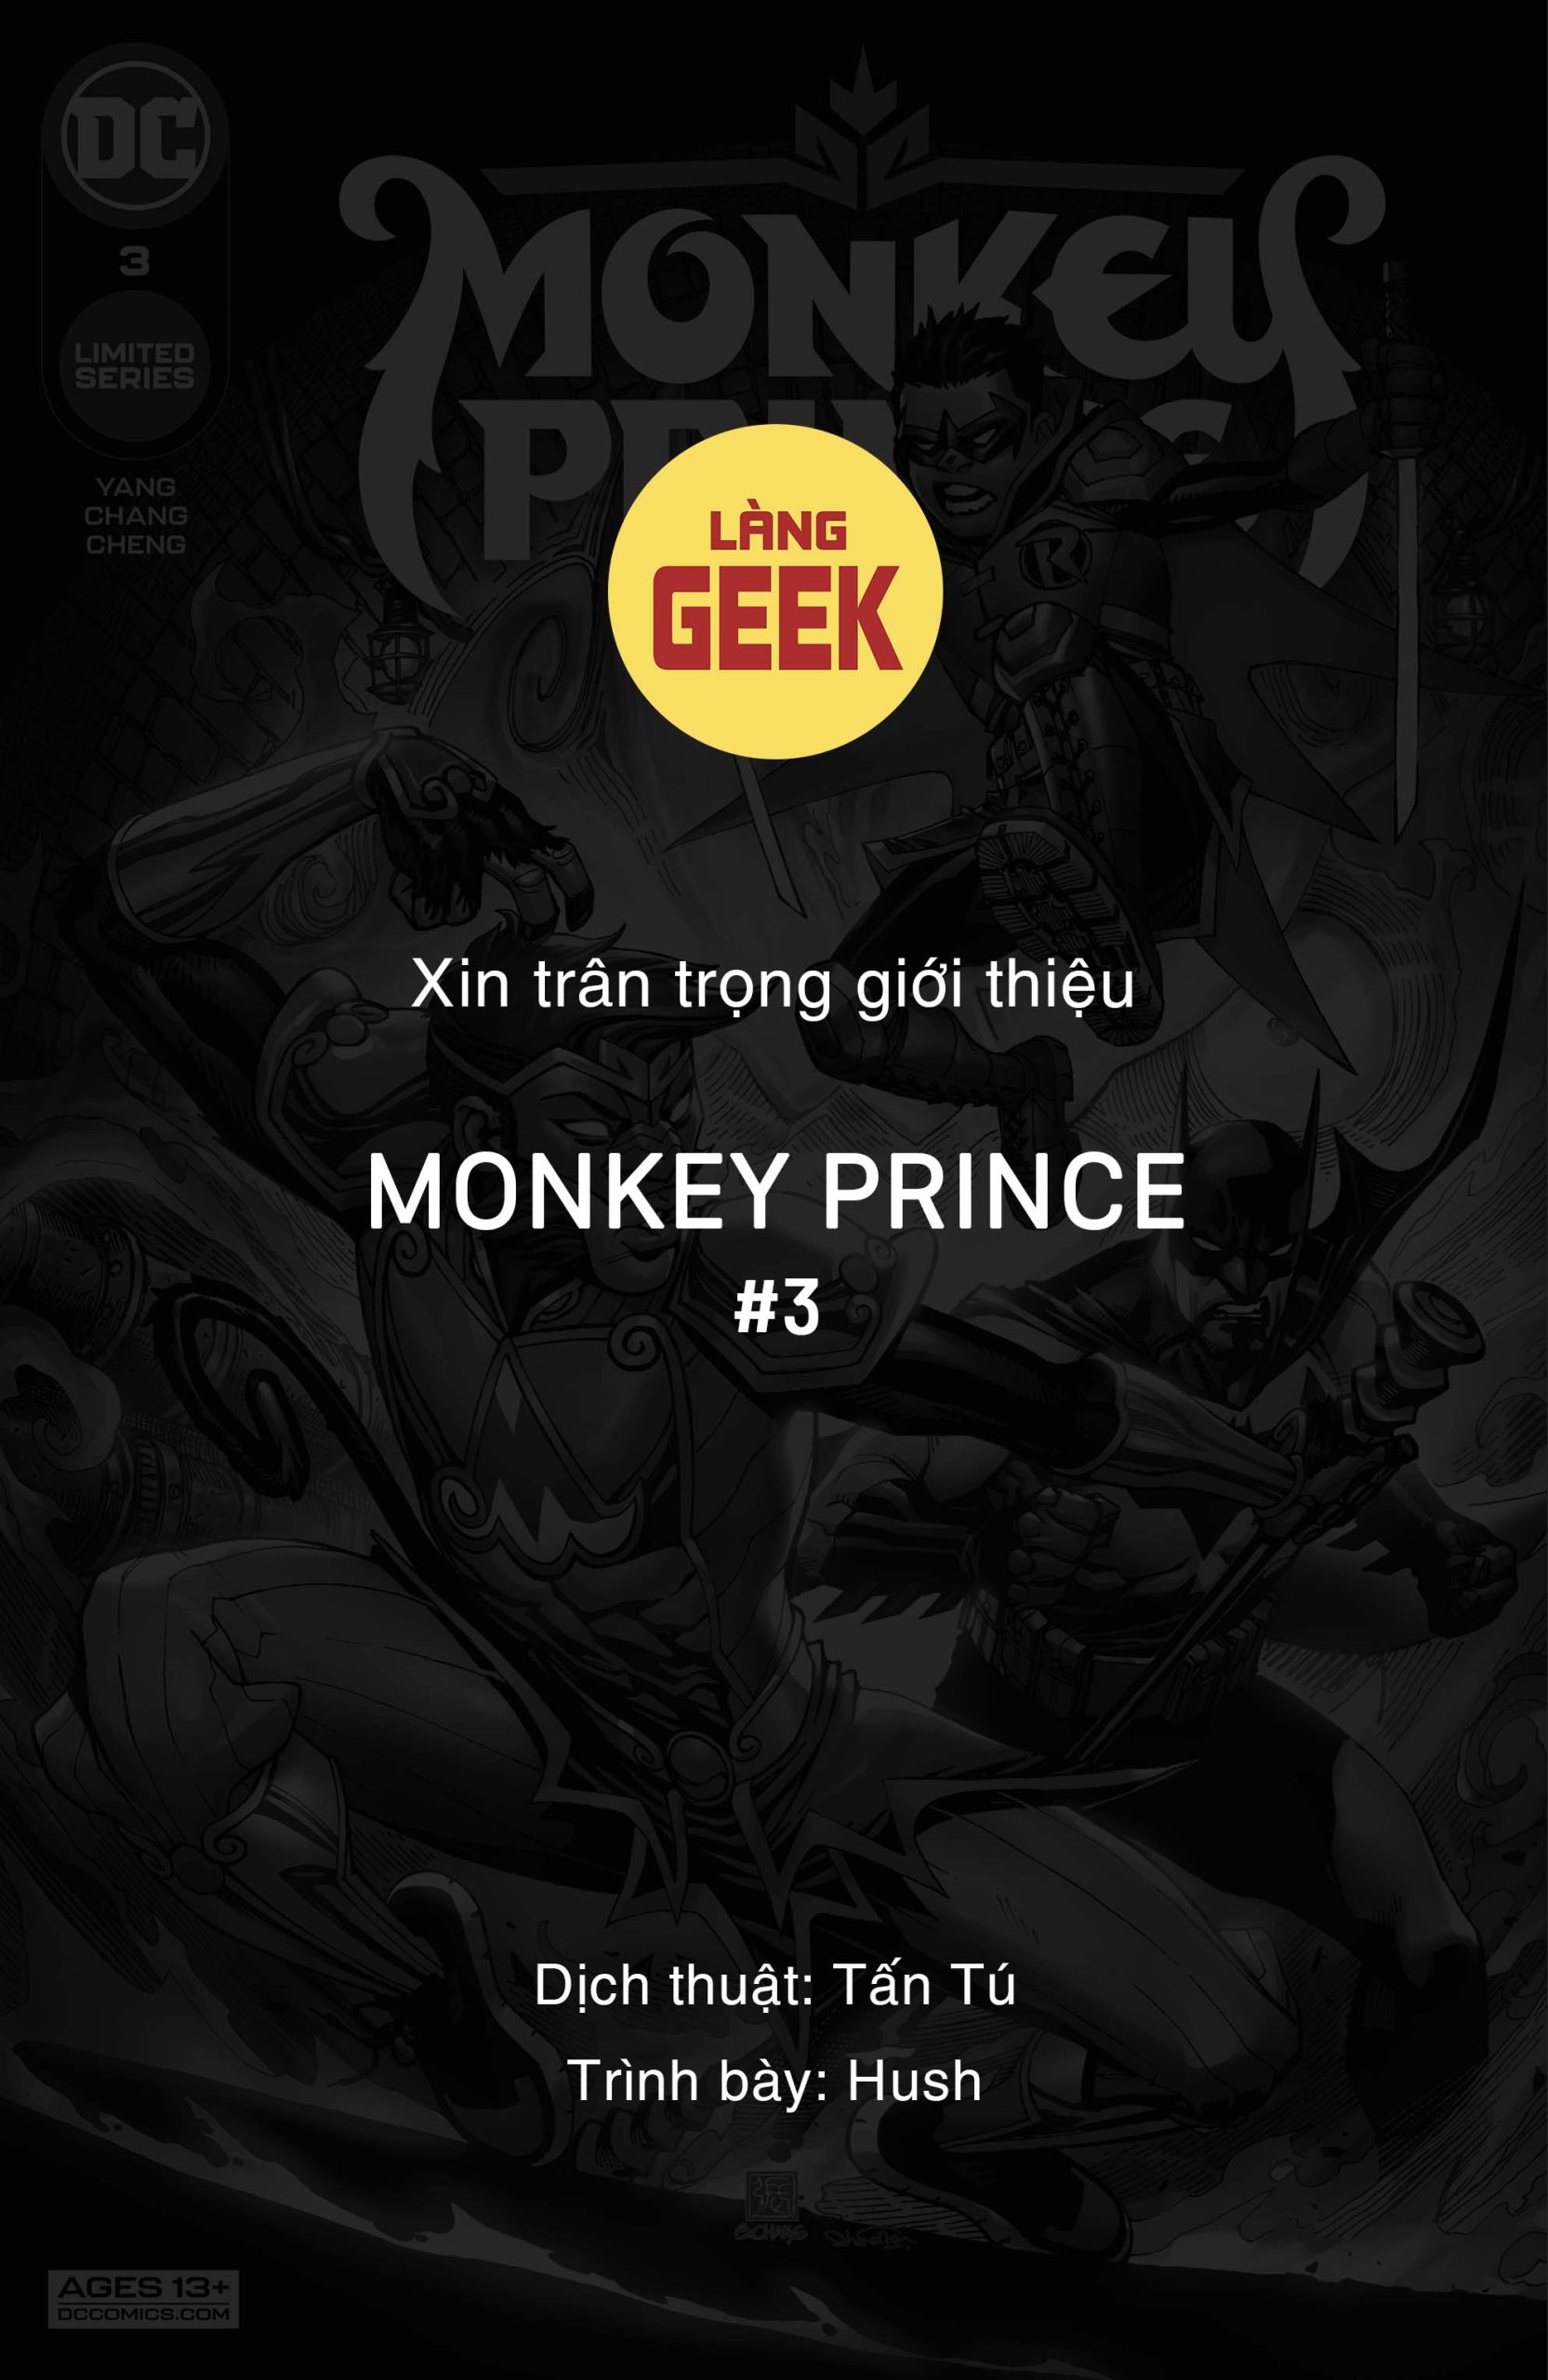 https://langgeek.net/wp-content/webpc-passthru.php?src=https://langgeek.net/wp-content/uploads/2023/03/Monkey-Prince-2022-003-000-1-scaled.jpg&nocache=1